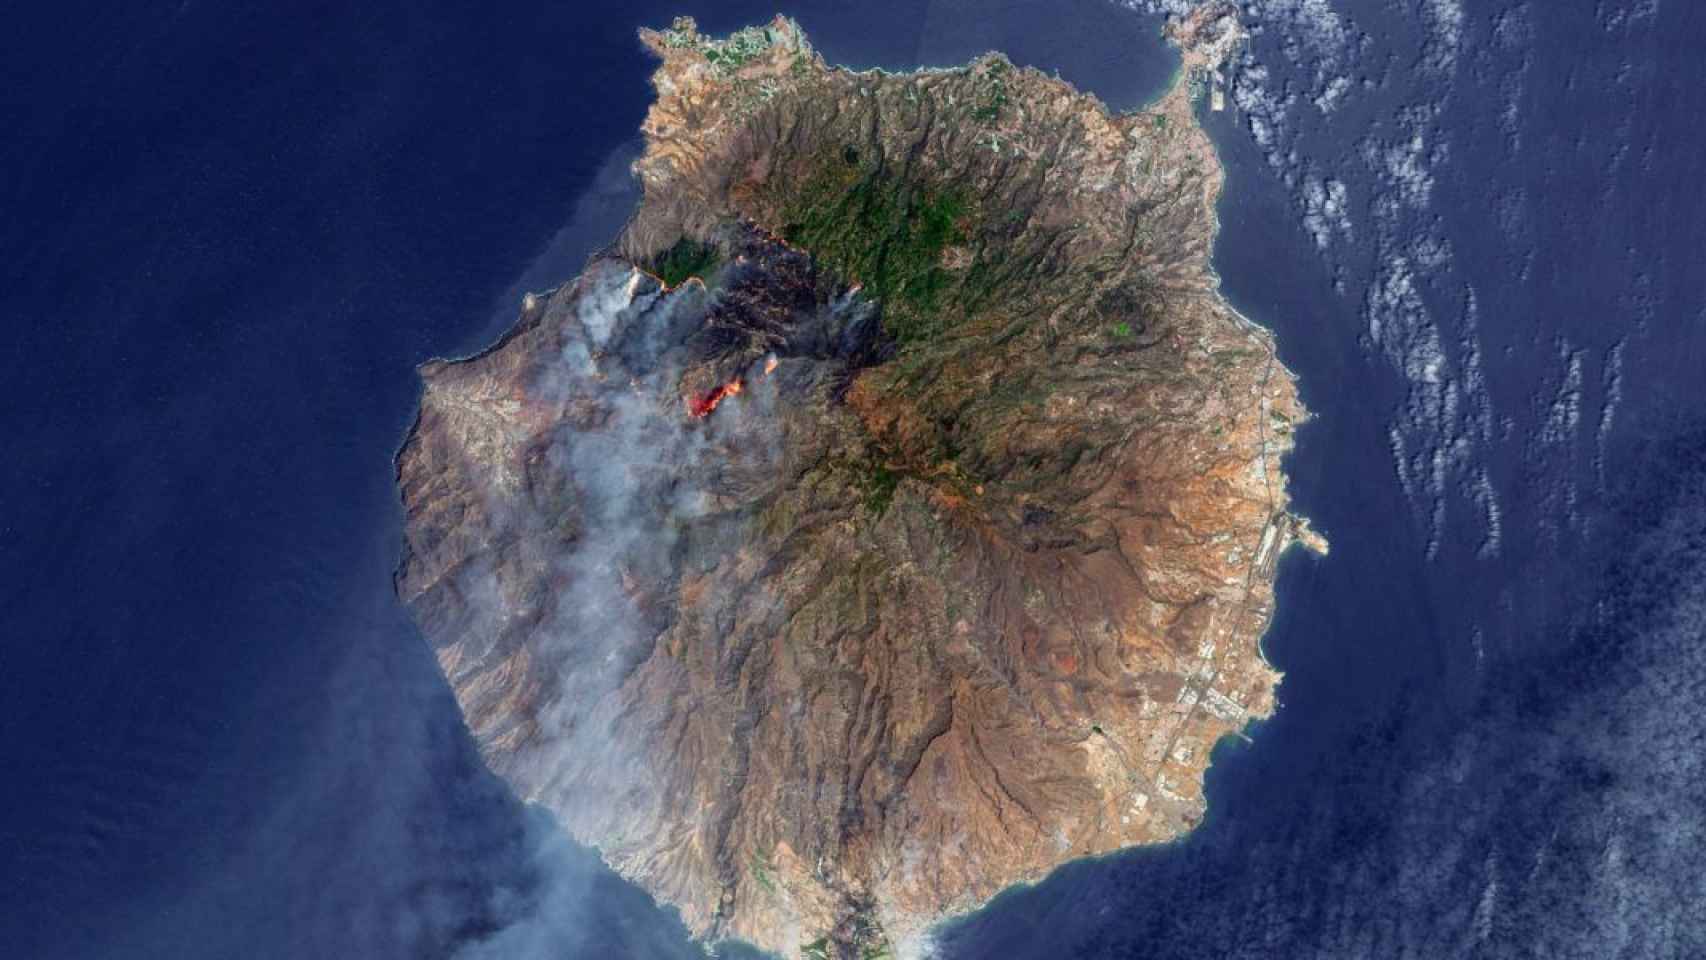 Fotografía de la isla de Gran Canaria tomada desde el satélite Sentinel 2.